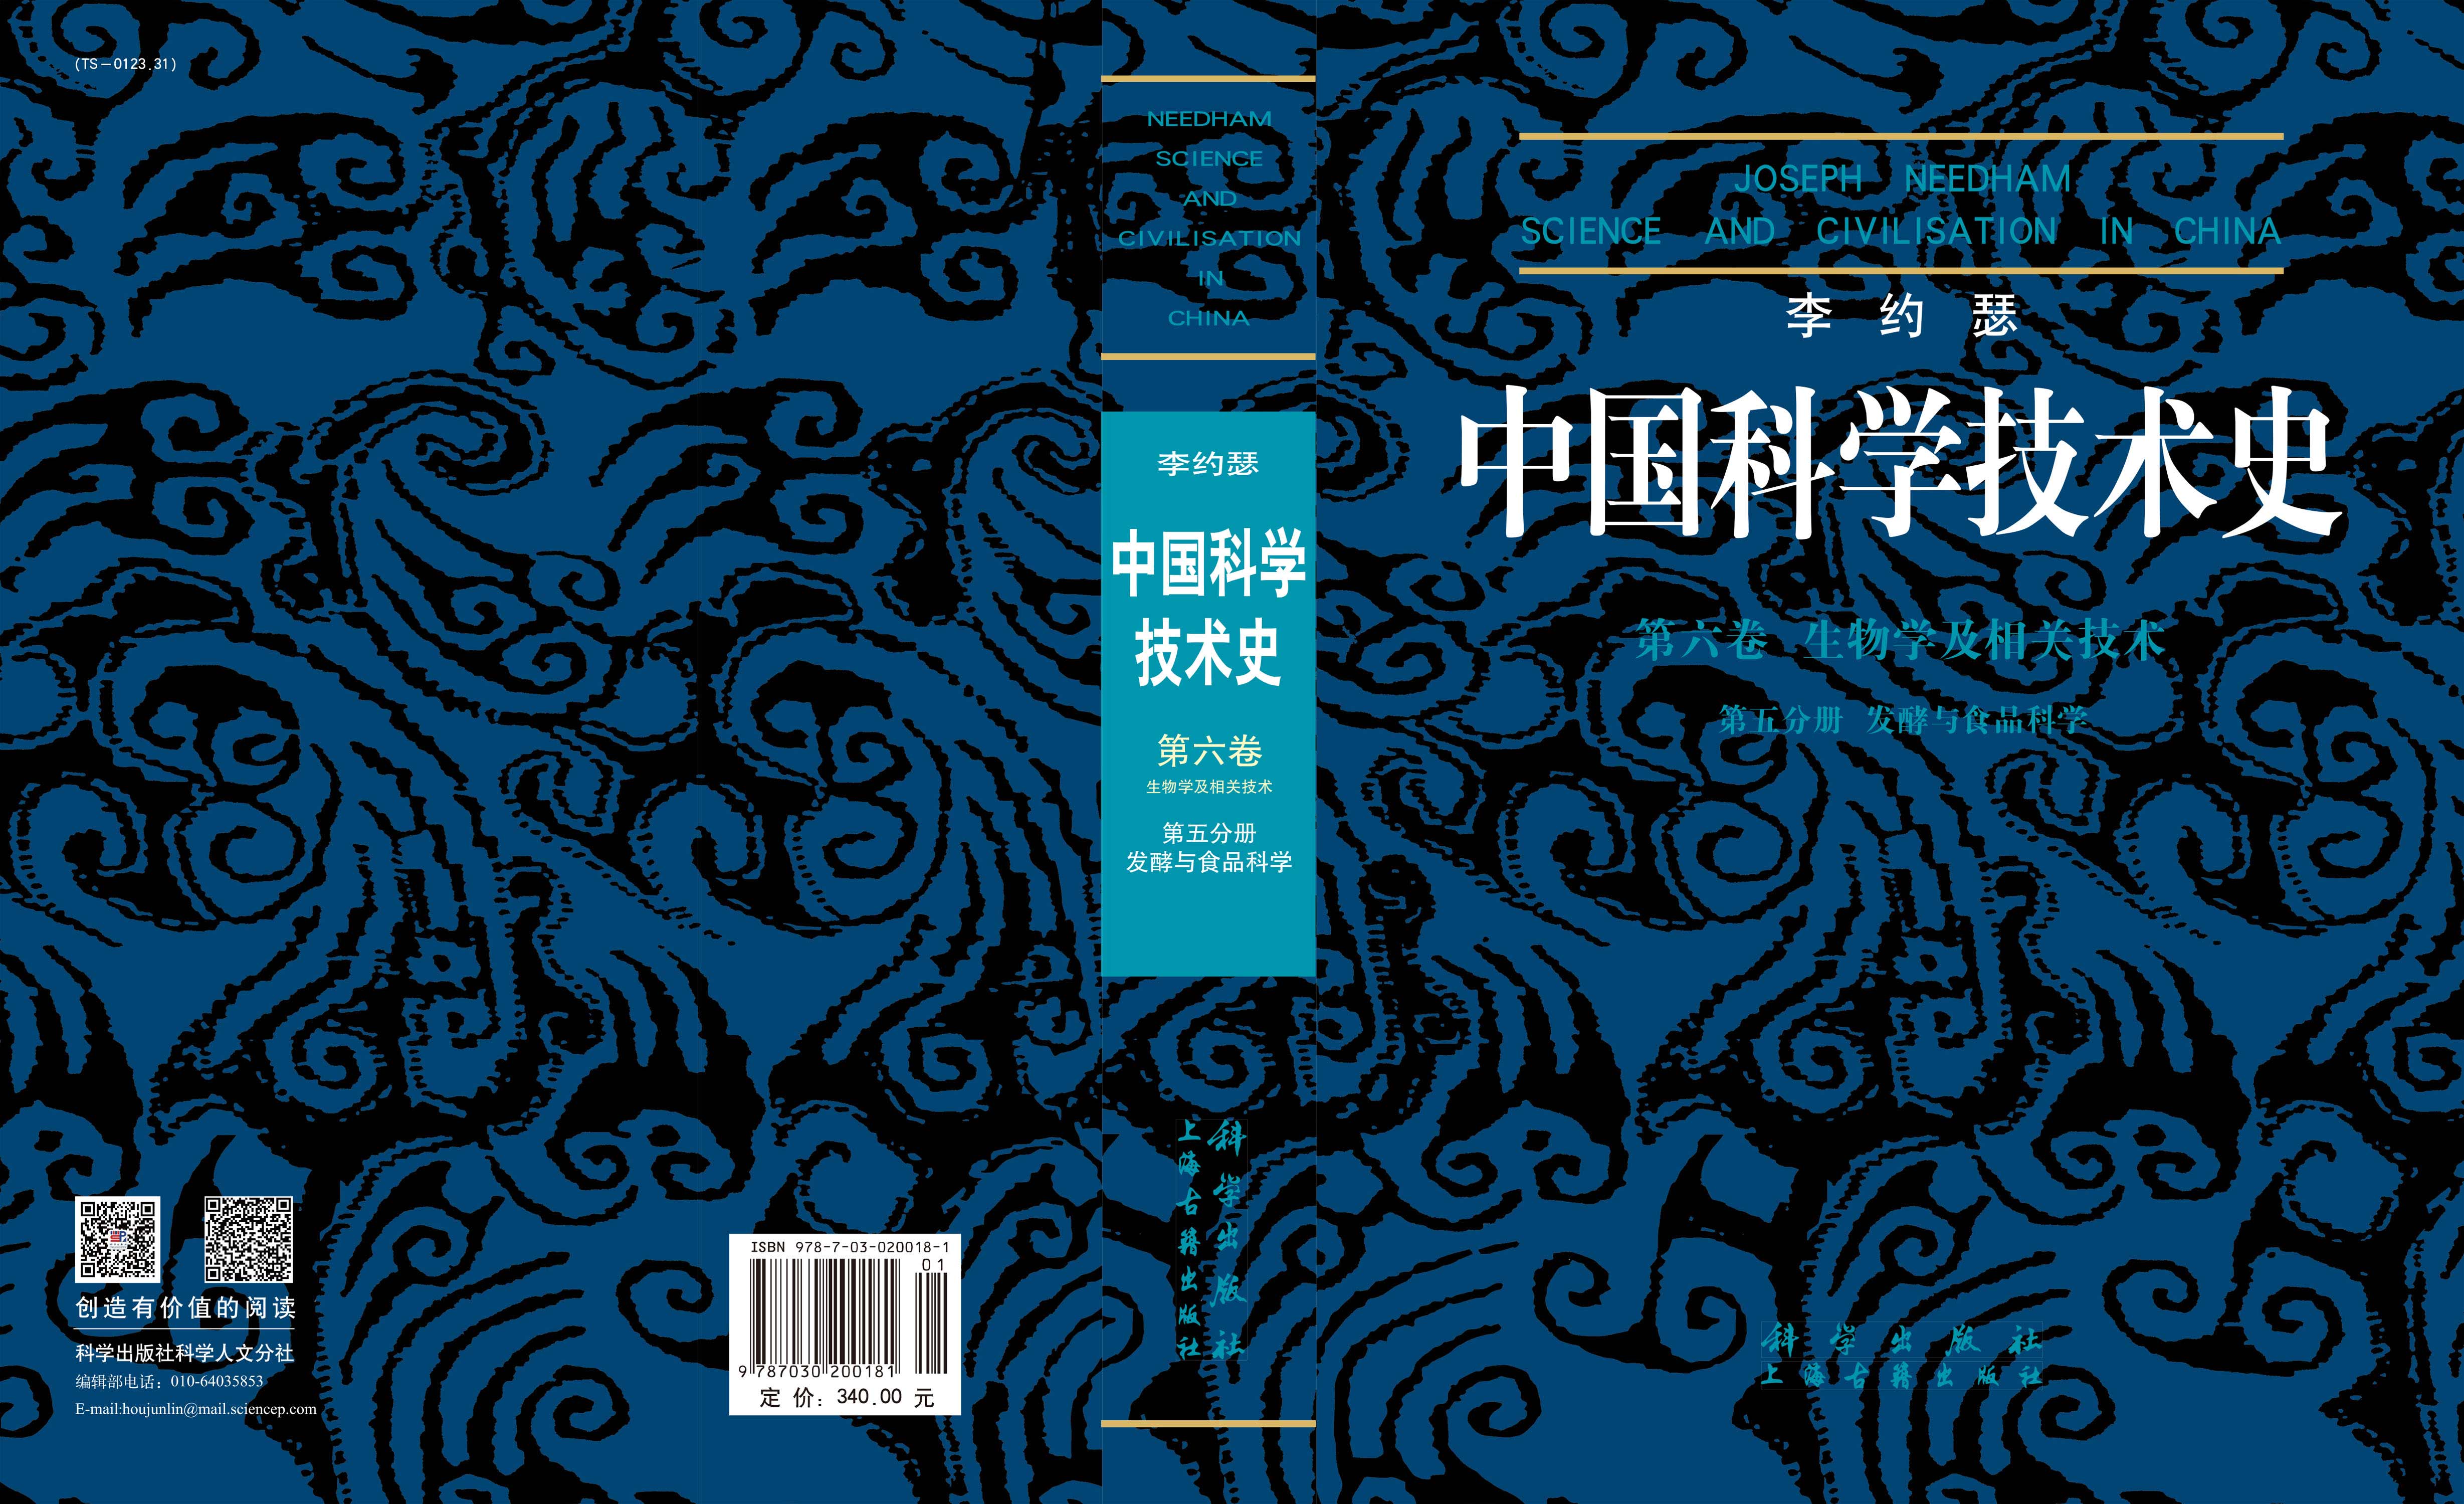 李约瑟中国科学技术史第六卷第五分册发酵与食品科学